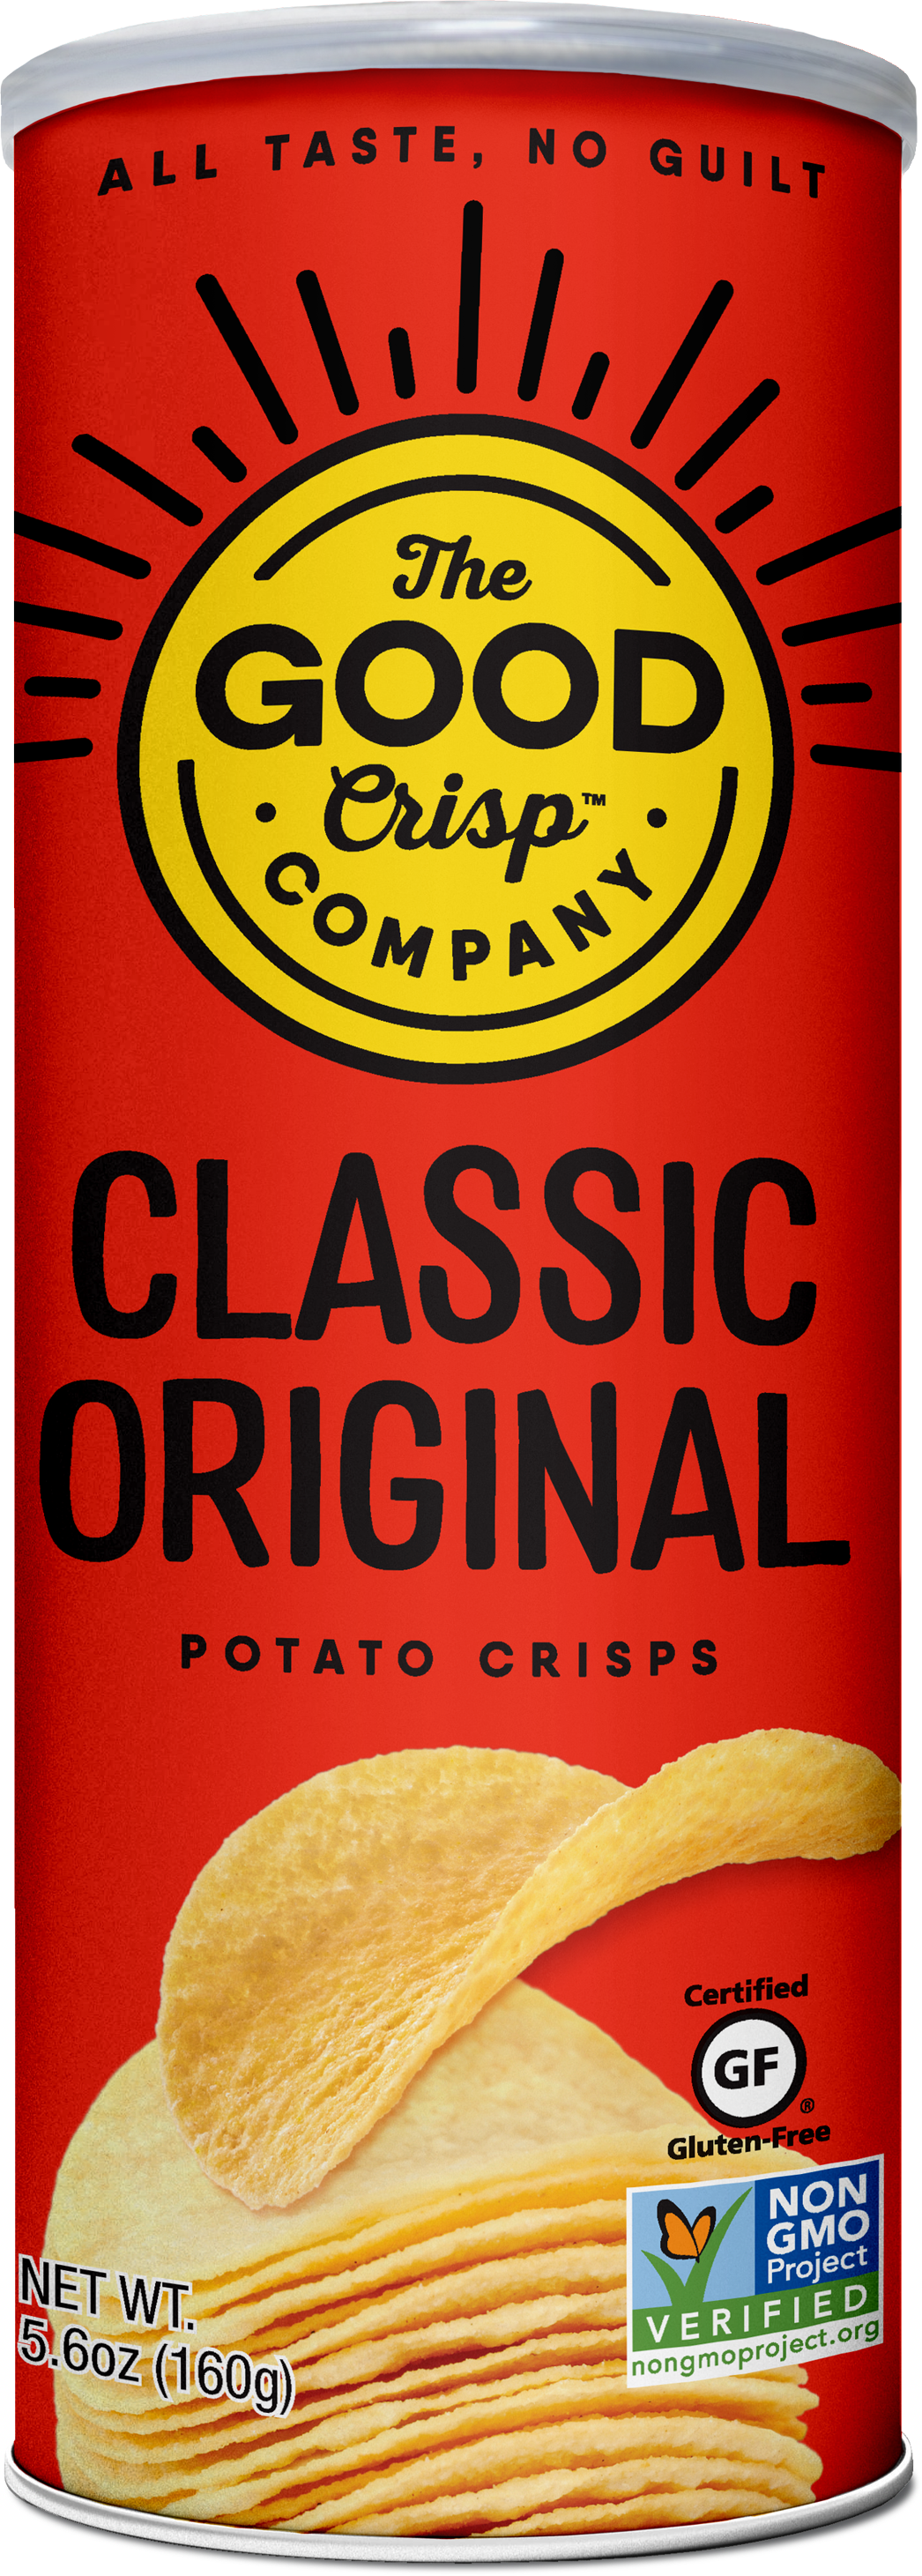 The Good Crisp Company - Classic Original